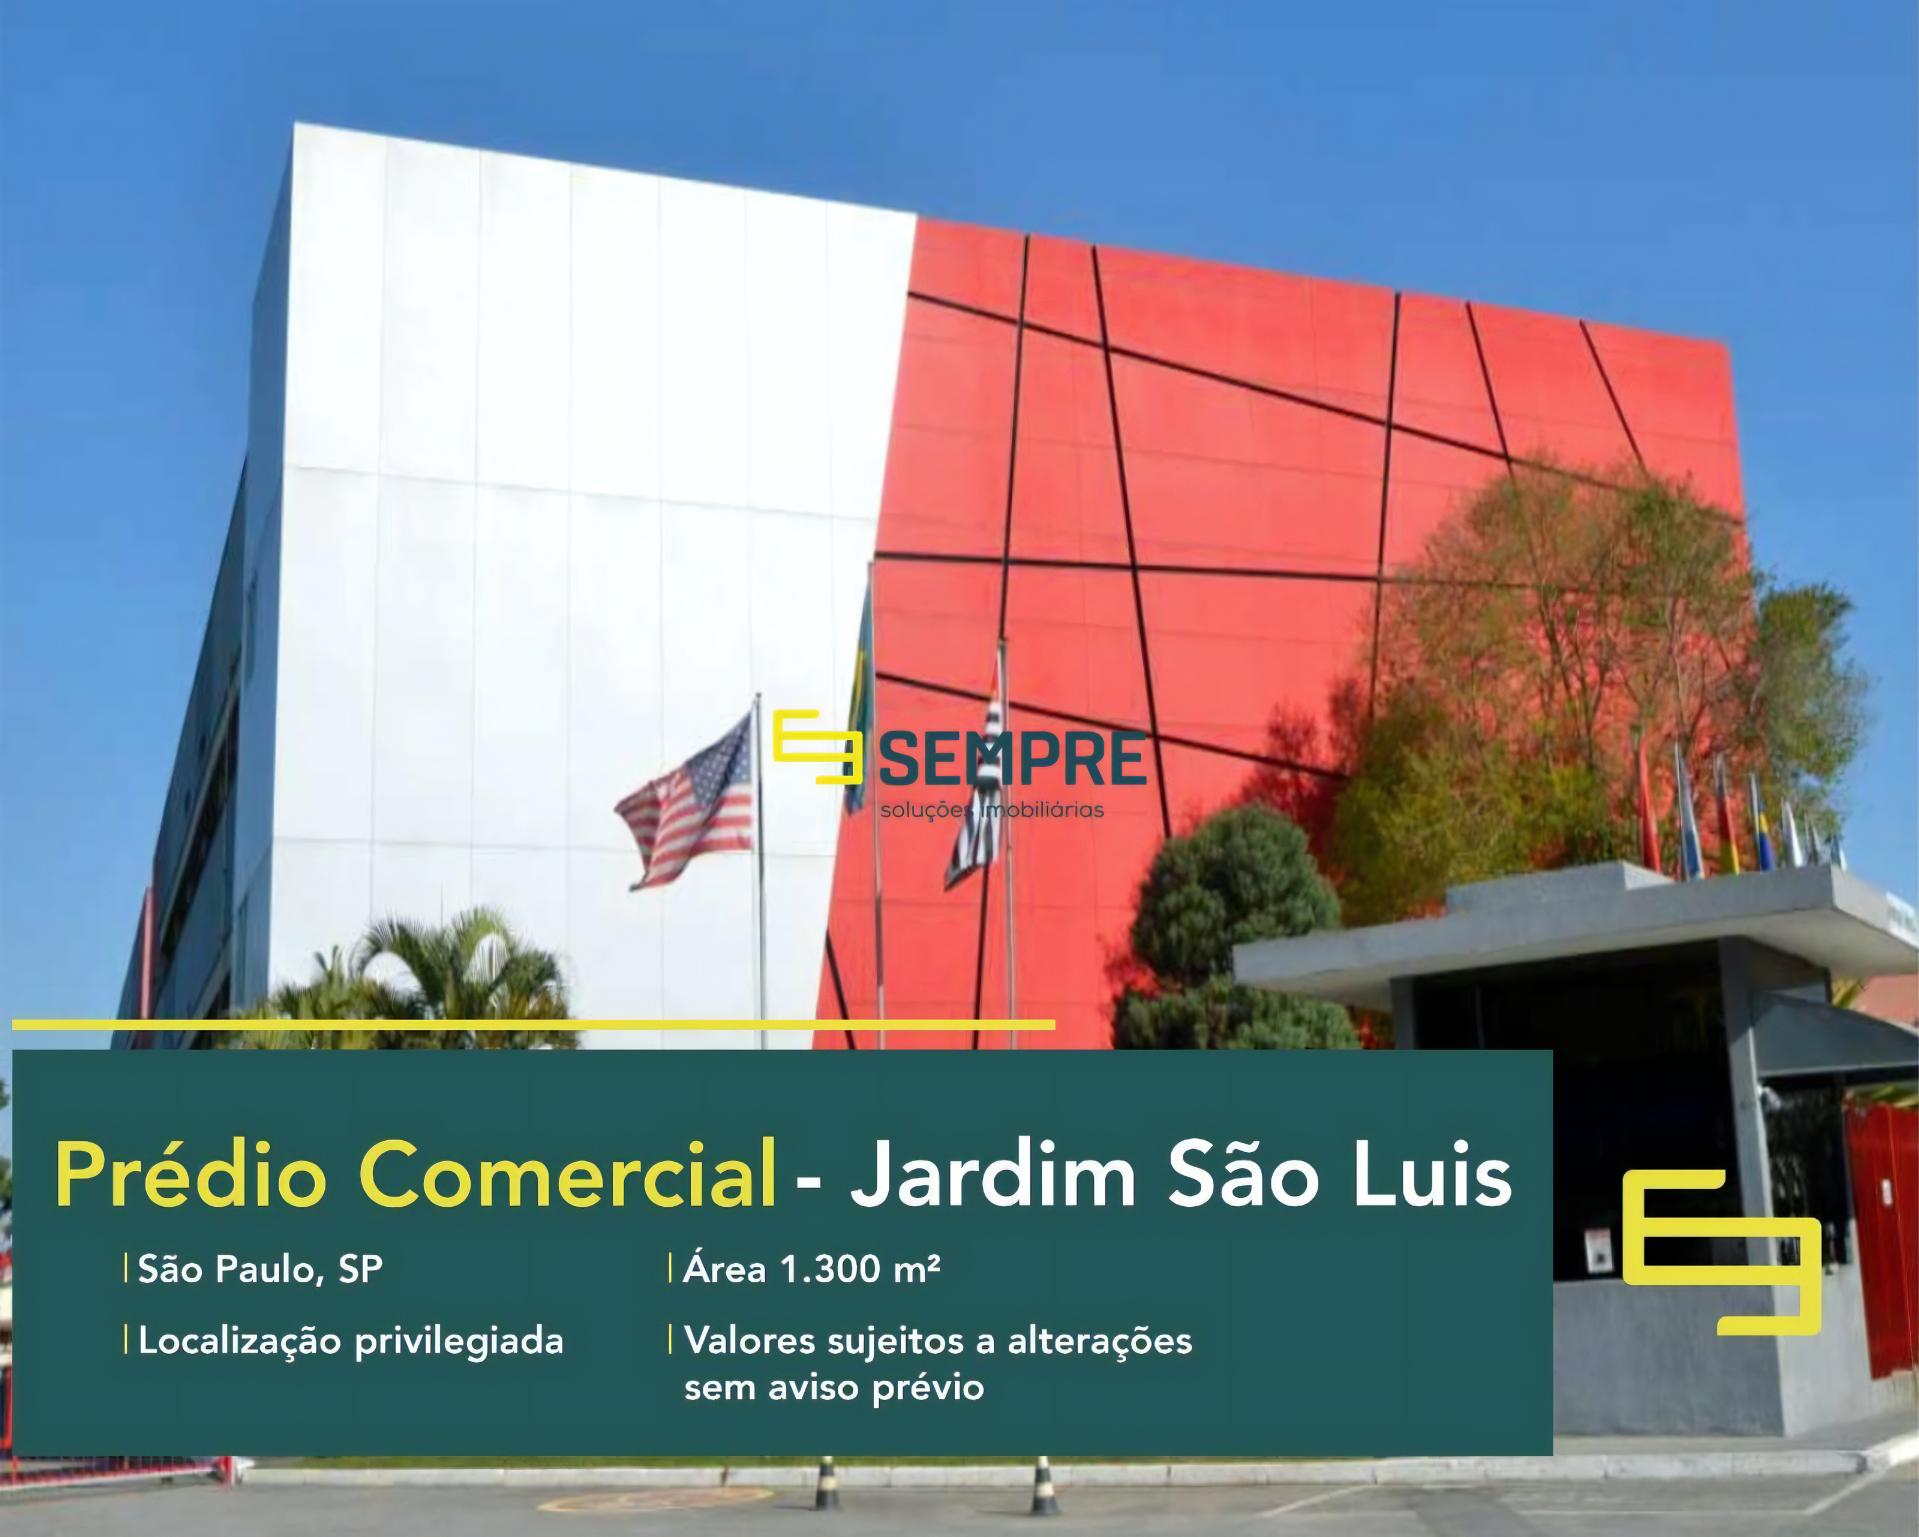 Prédio comercial para alugar em SP - Jardim São Luis, excelente localização. O estabelecimento comercial conta com área de 1.300 m².